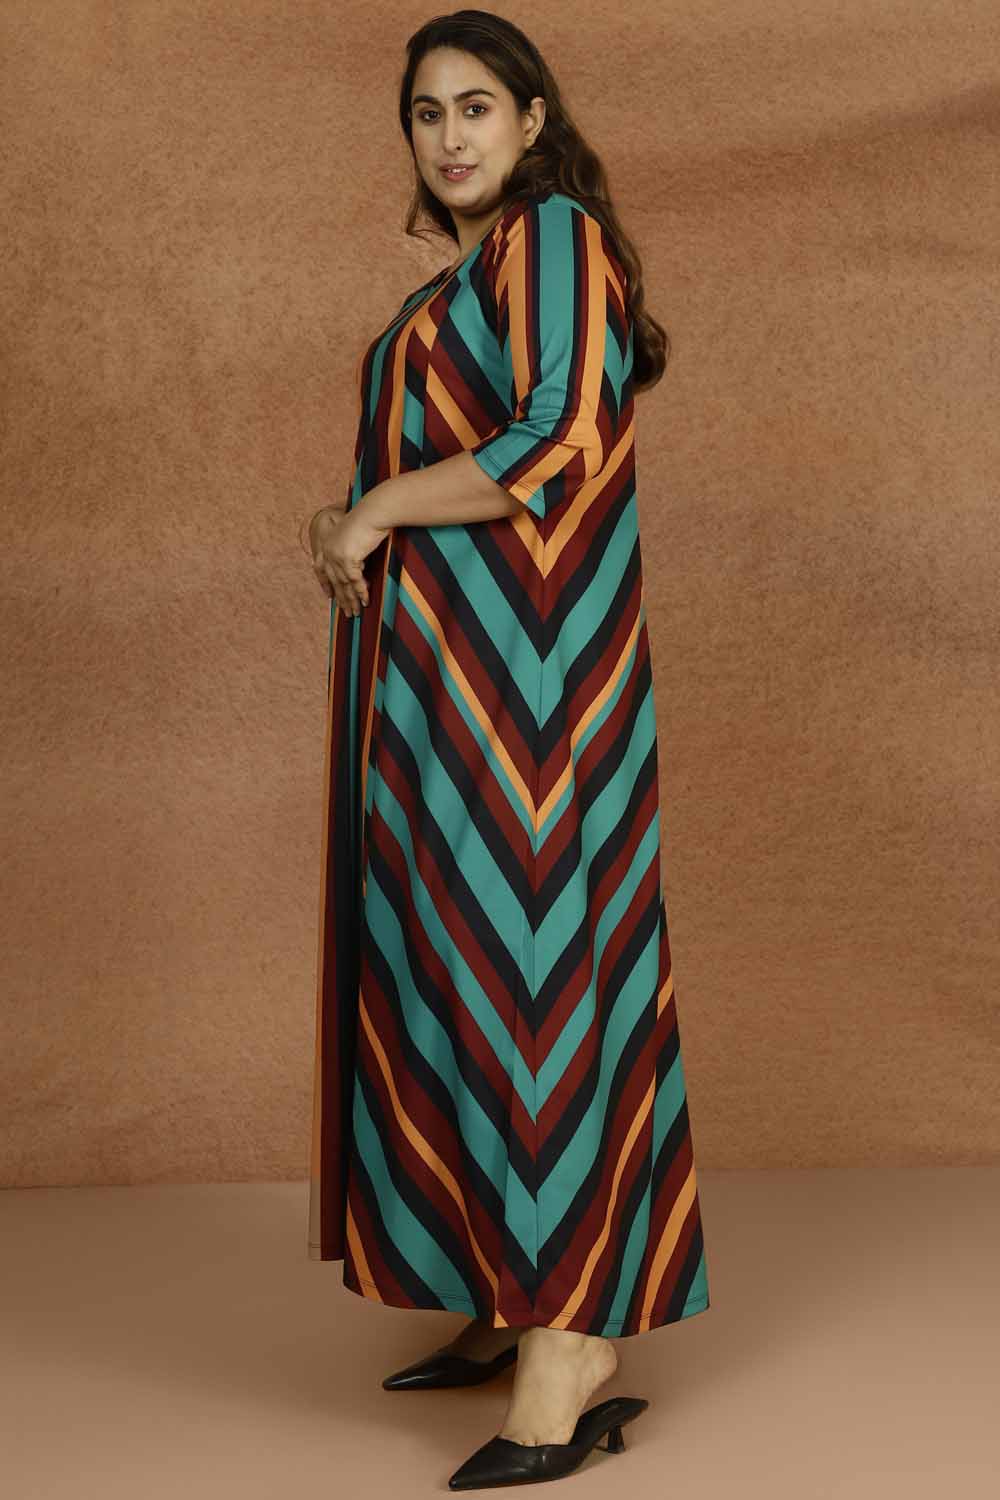 Bright Stripe Plus Size Ombre Dress